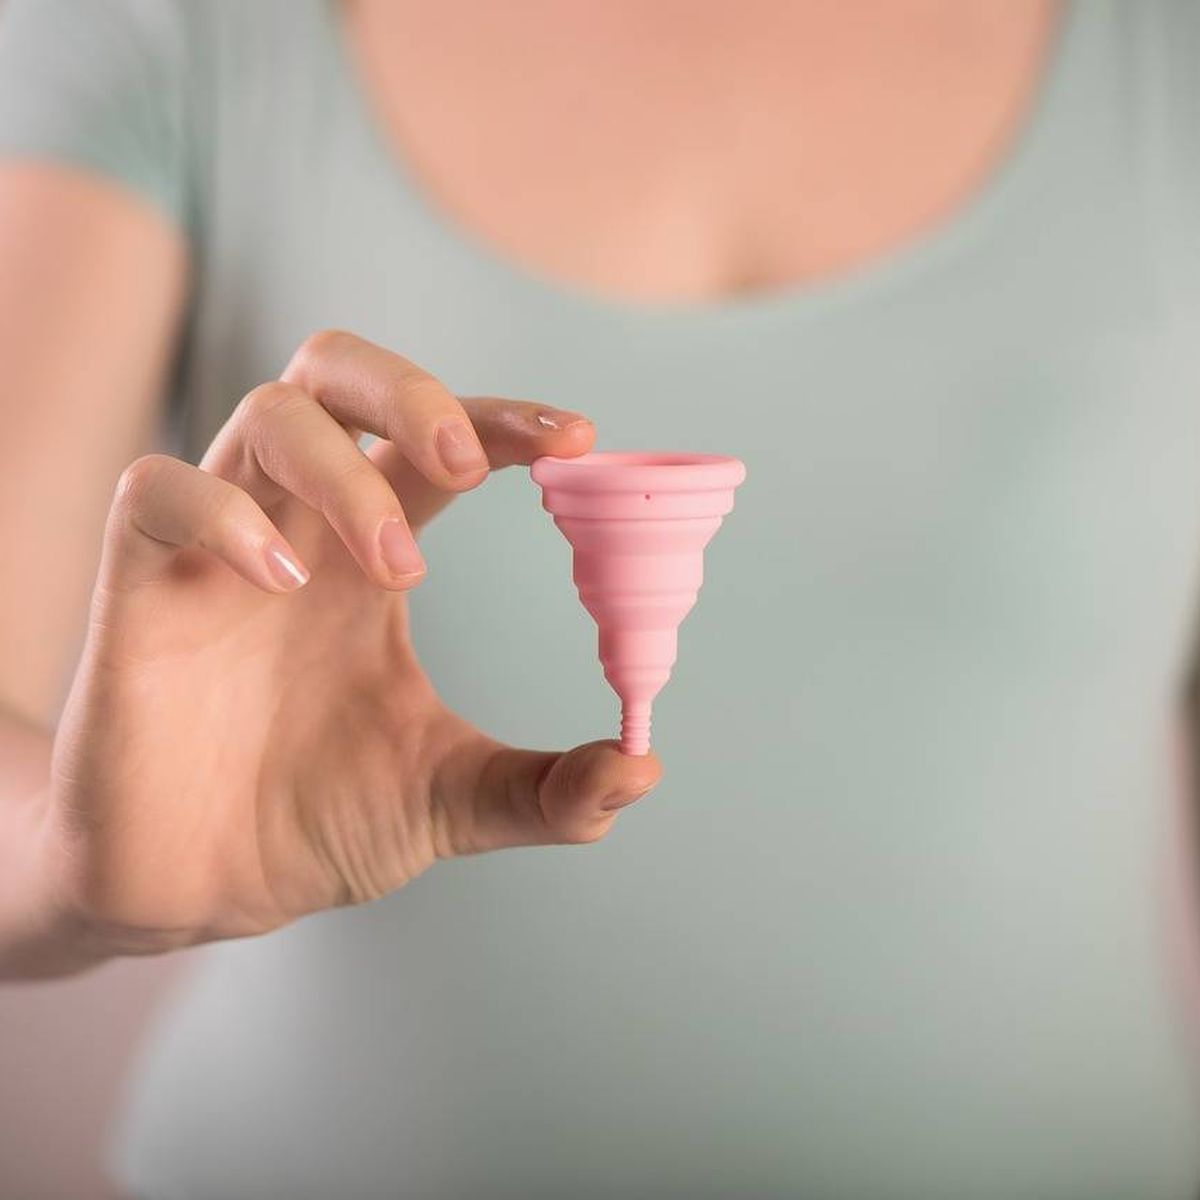 elegir la copa menstrual del mercado: tipos opciones disponibles